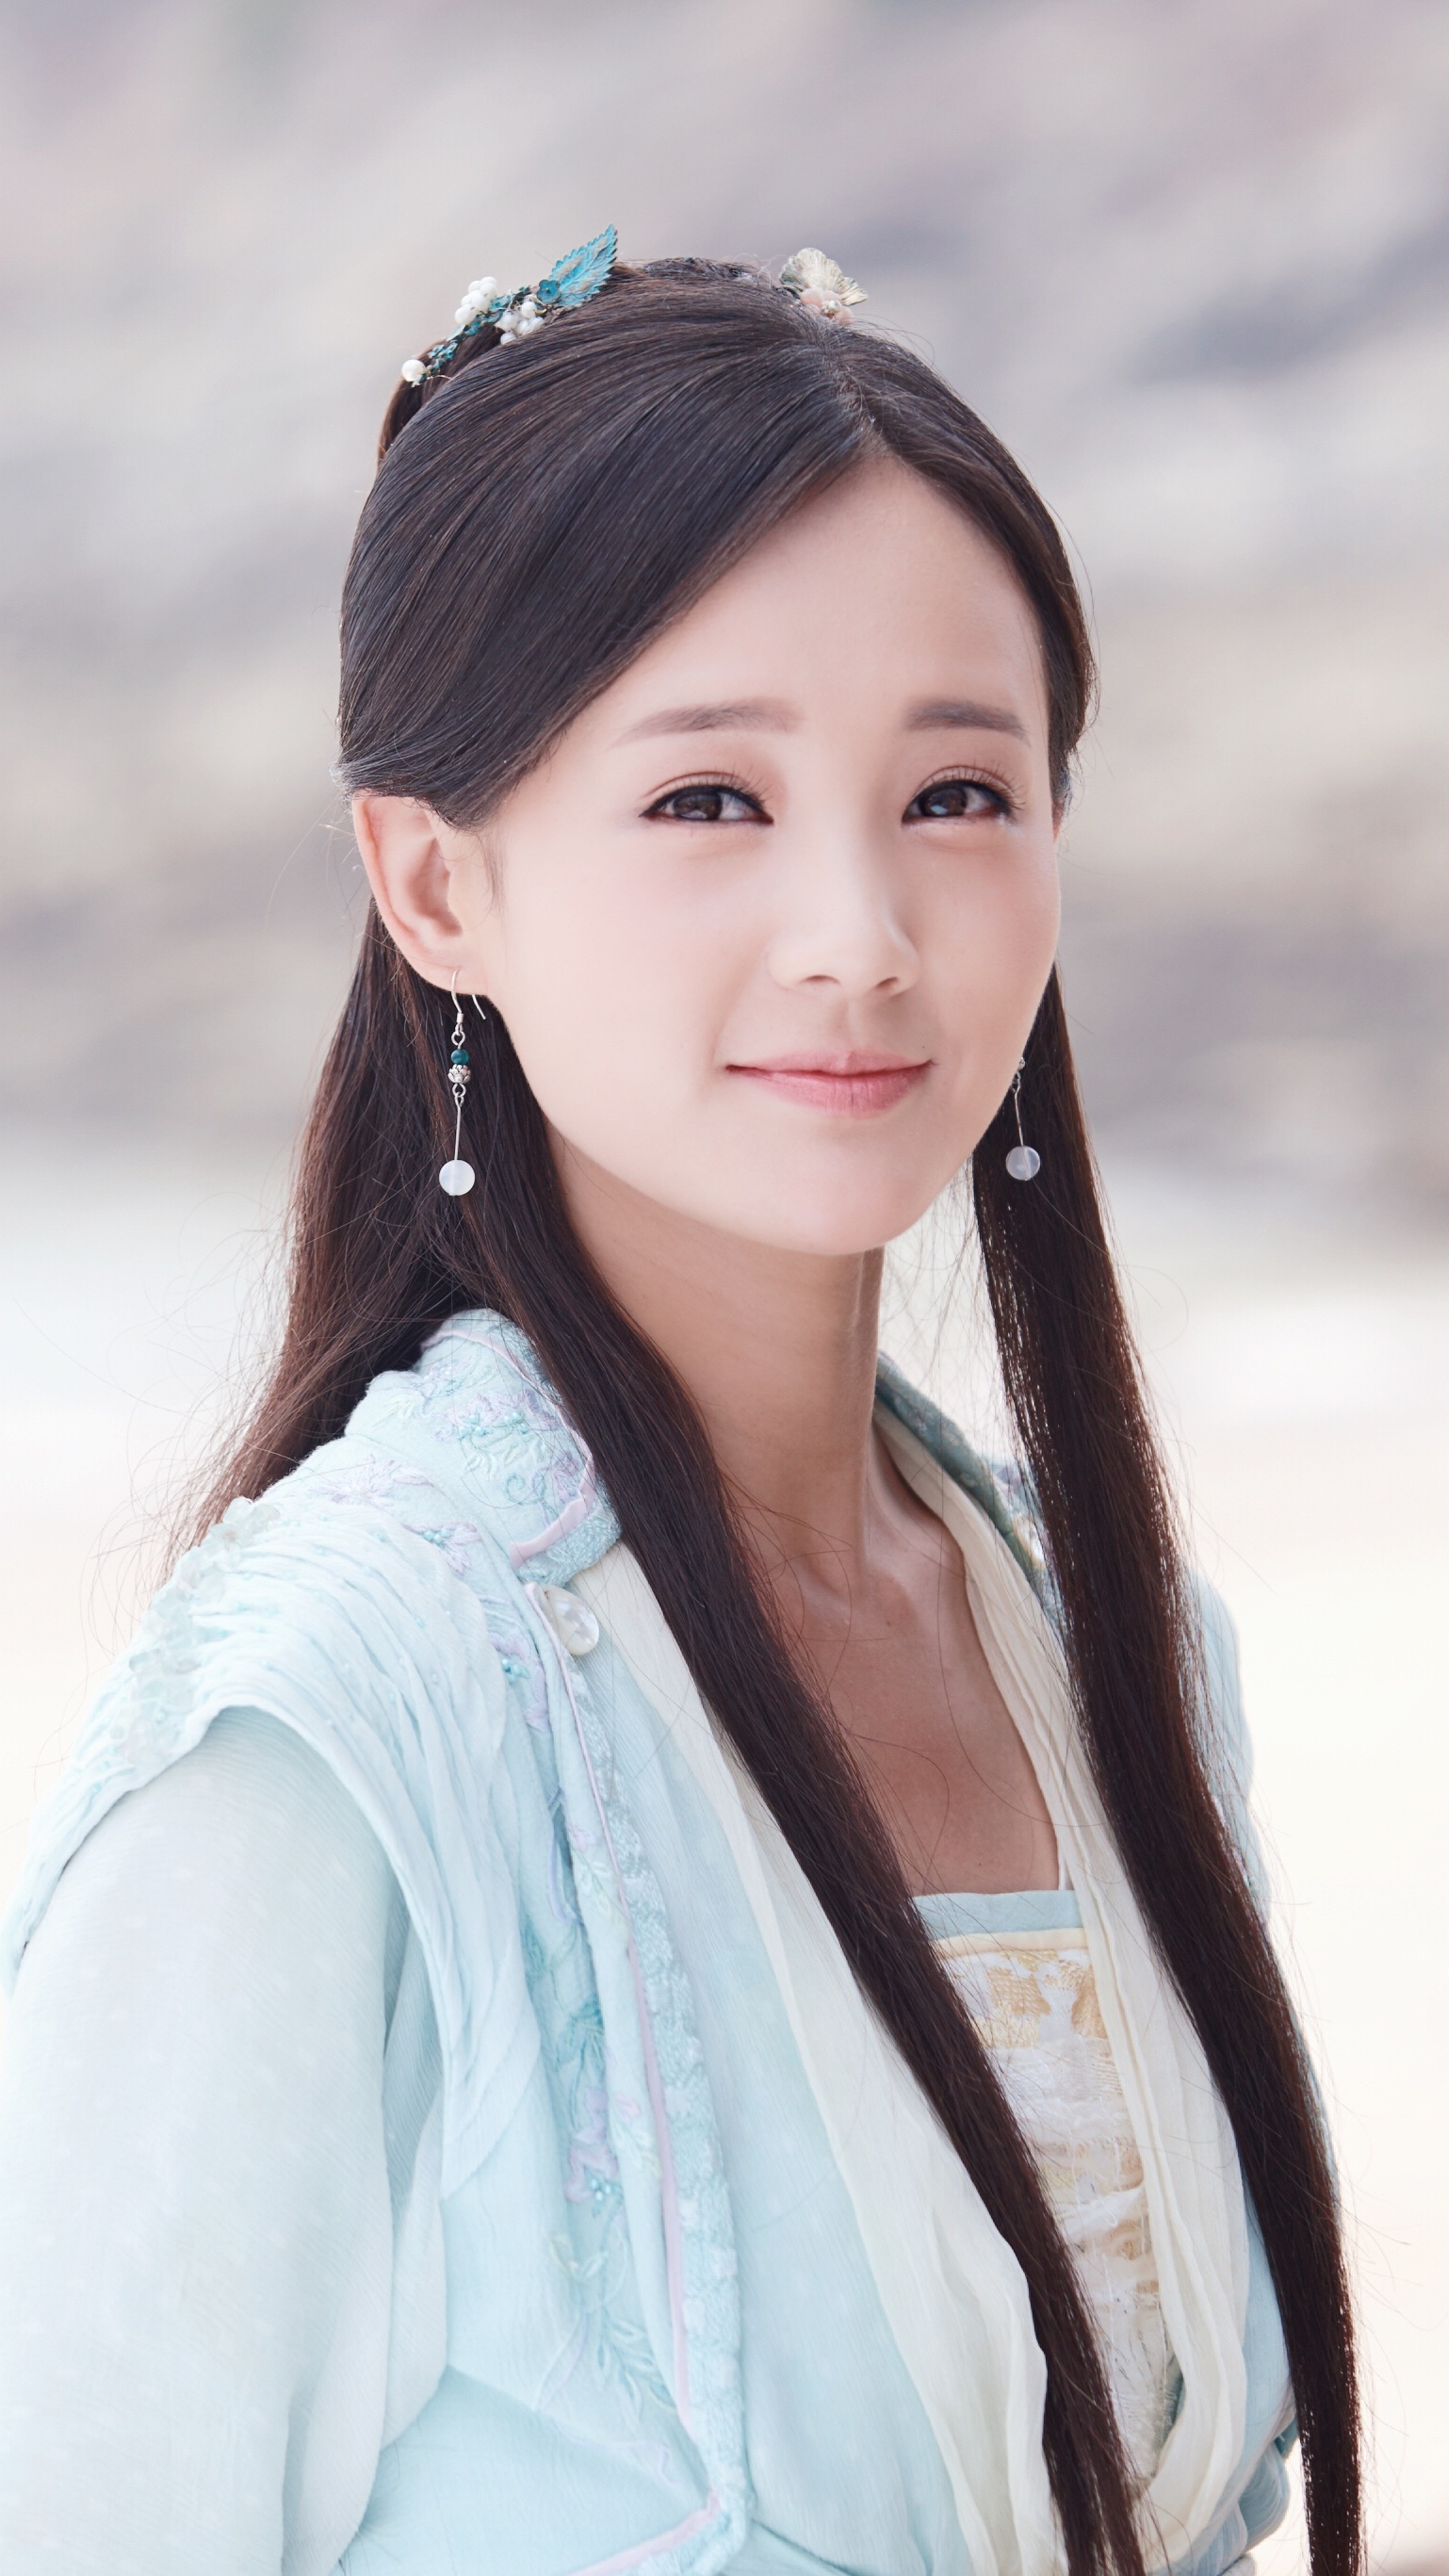 2019年4月,参演电视剧《特战荣耀》,在剧中饰演艾千雪